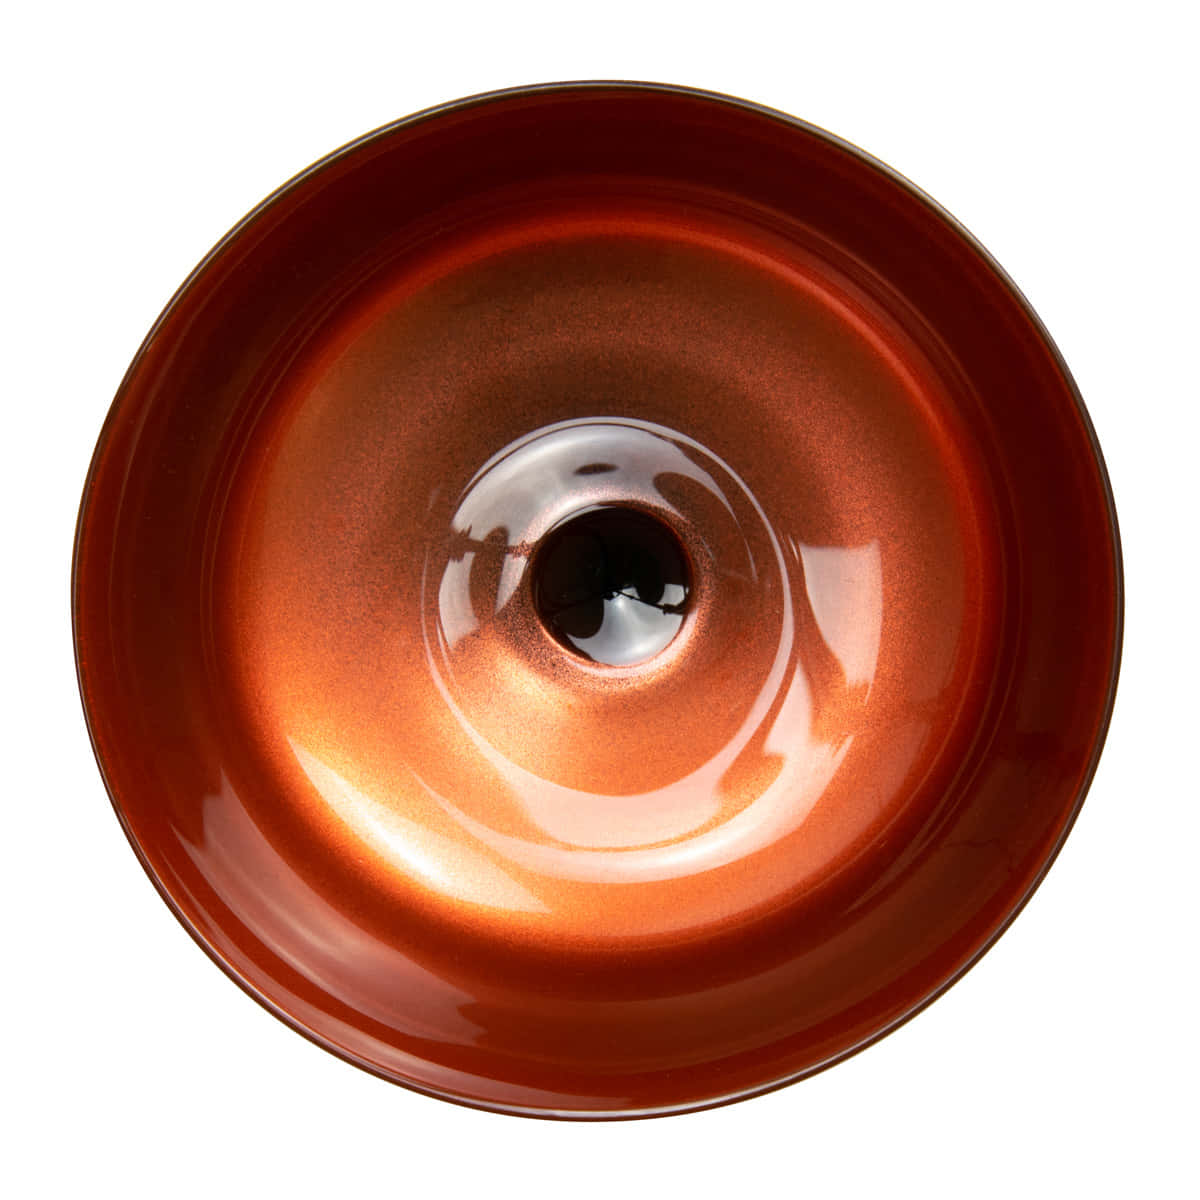 Kupferfarbene Schale von Retro Fizzio Cocktailglas